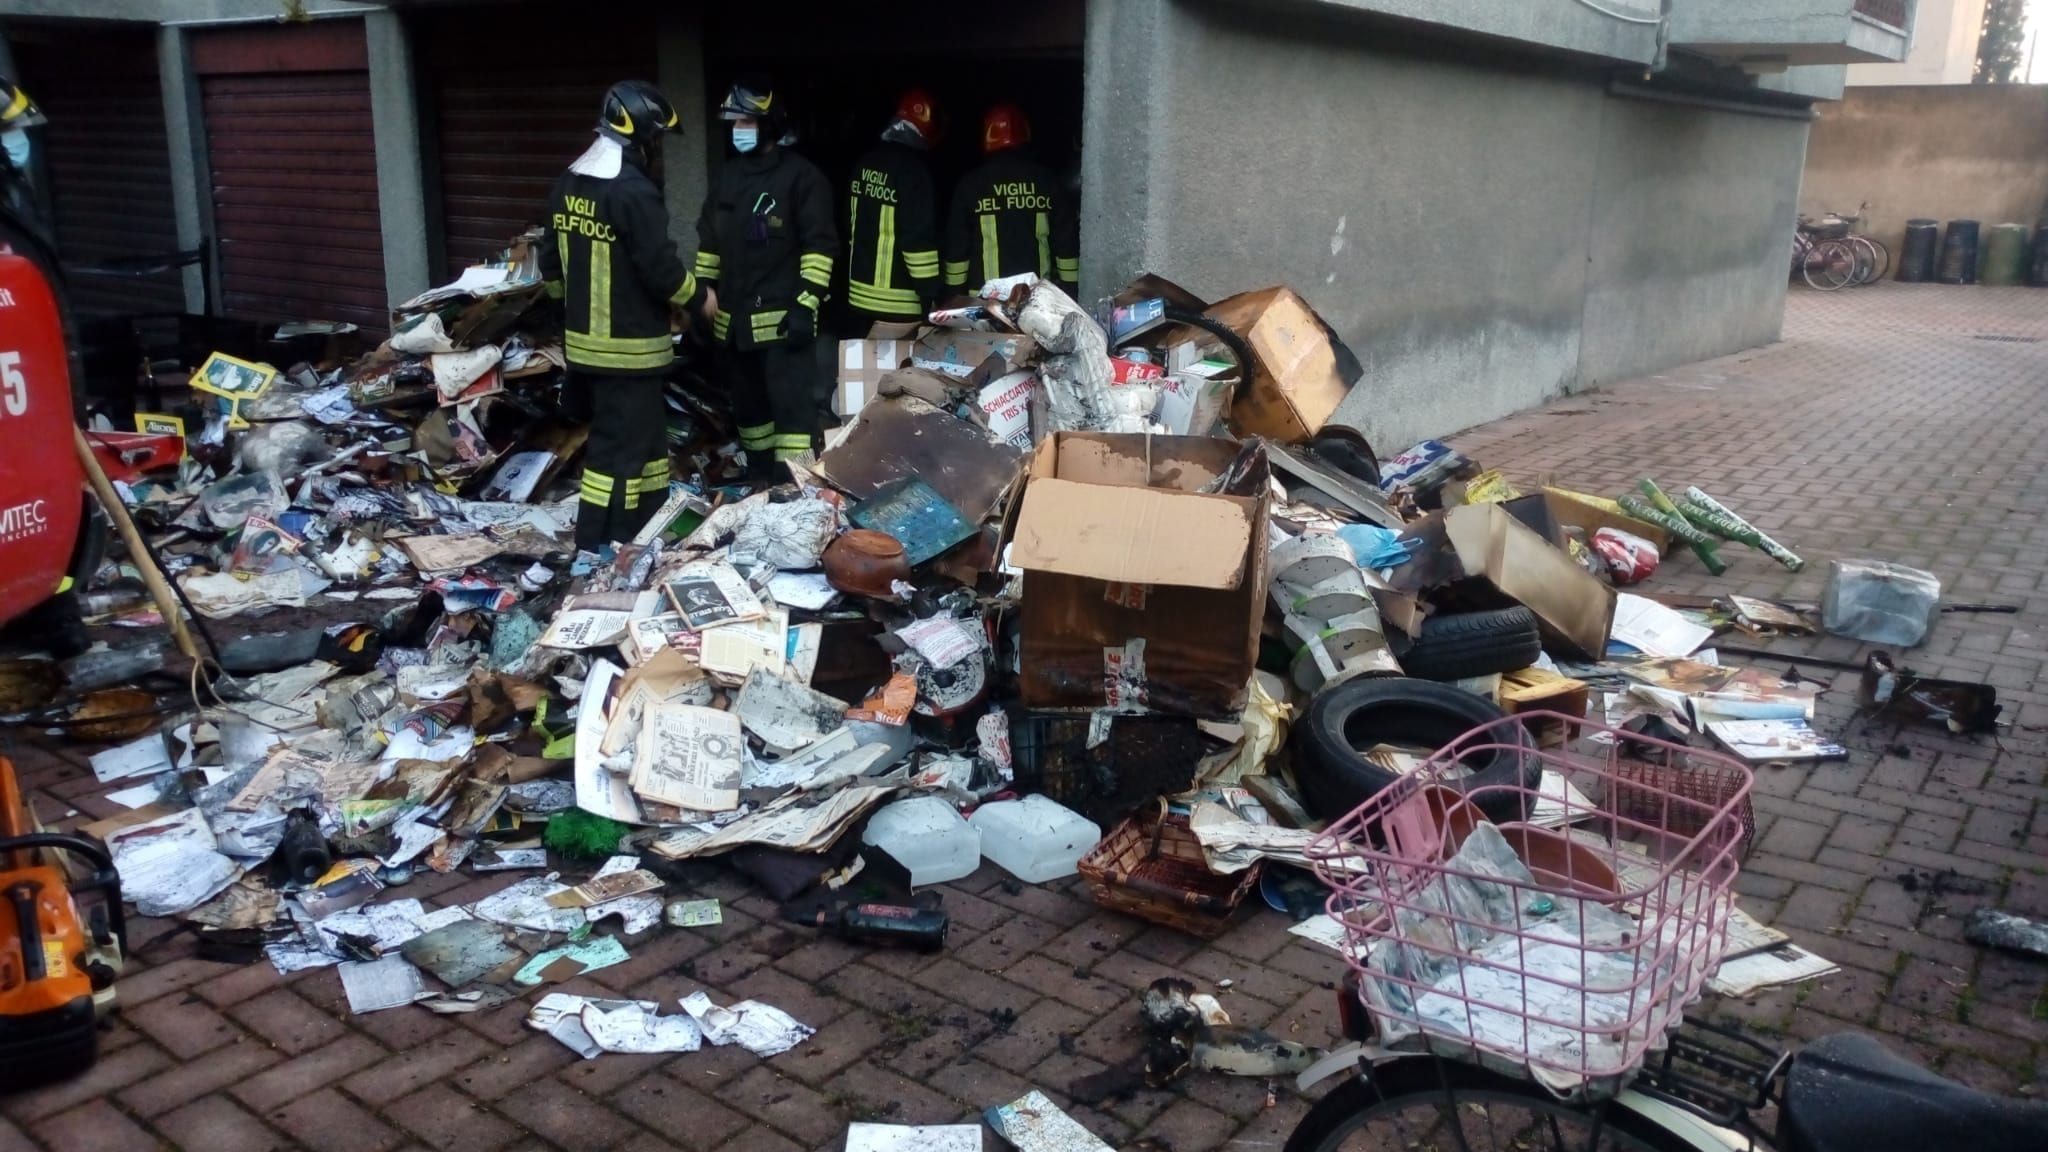 Saronno, fiamme in un garage: vigili del fuoco in via Reina per spegnere l’incendio